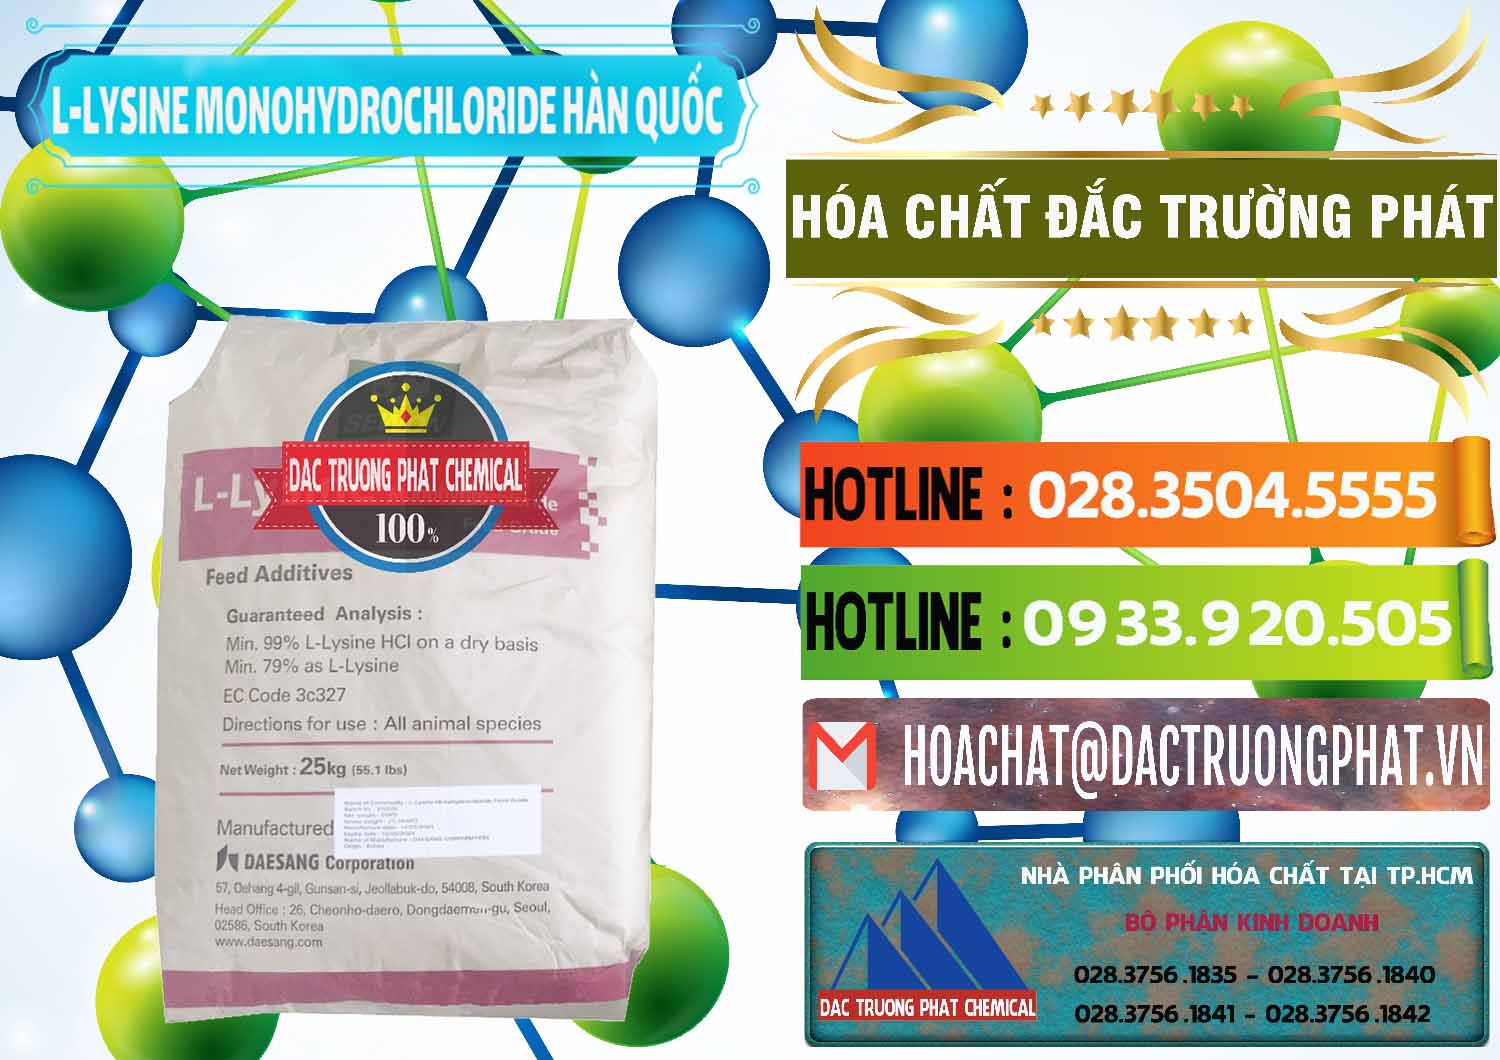 Cty chuyên bán _ phân phối L-Lysine Monohydrochloride Feed Grade Sewon Hàn Quốc Korea - 0302 - Đơn vị cung cấp _ kinh doanh hóa chất tại TP.HCM - cungcaphoachat.com.vn